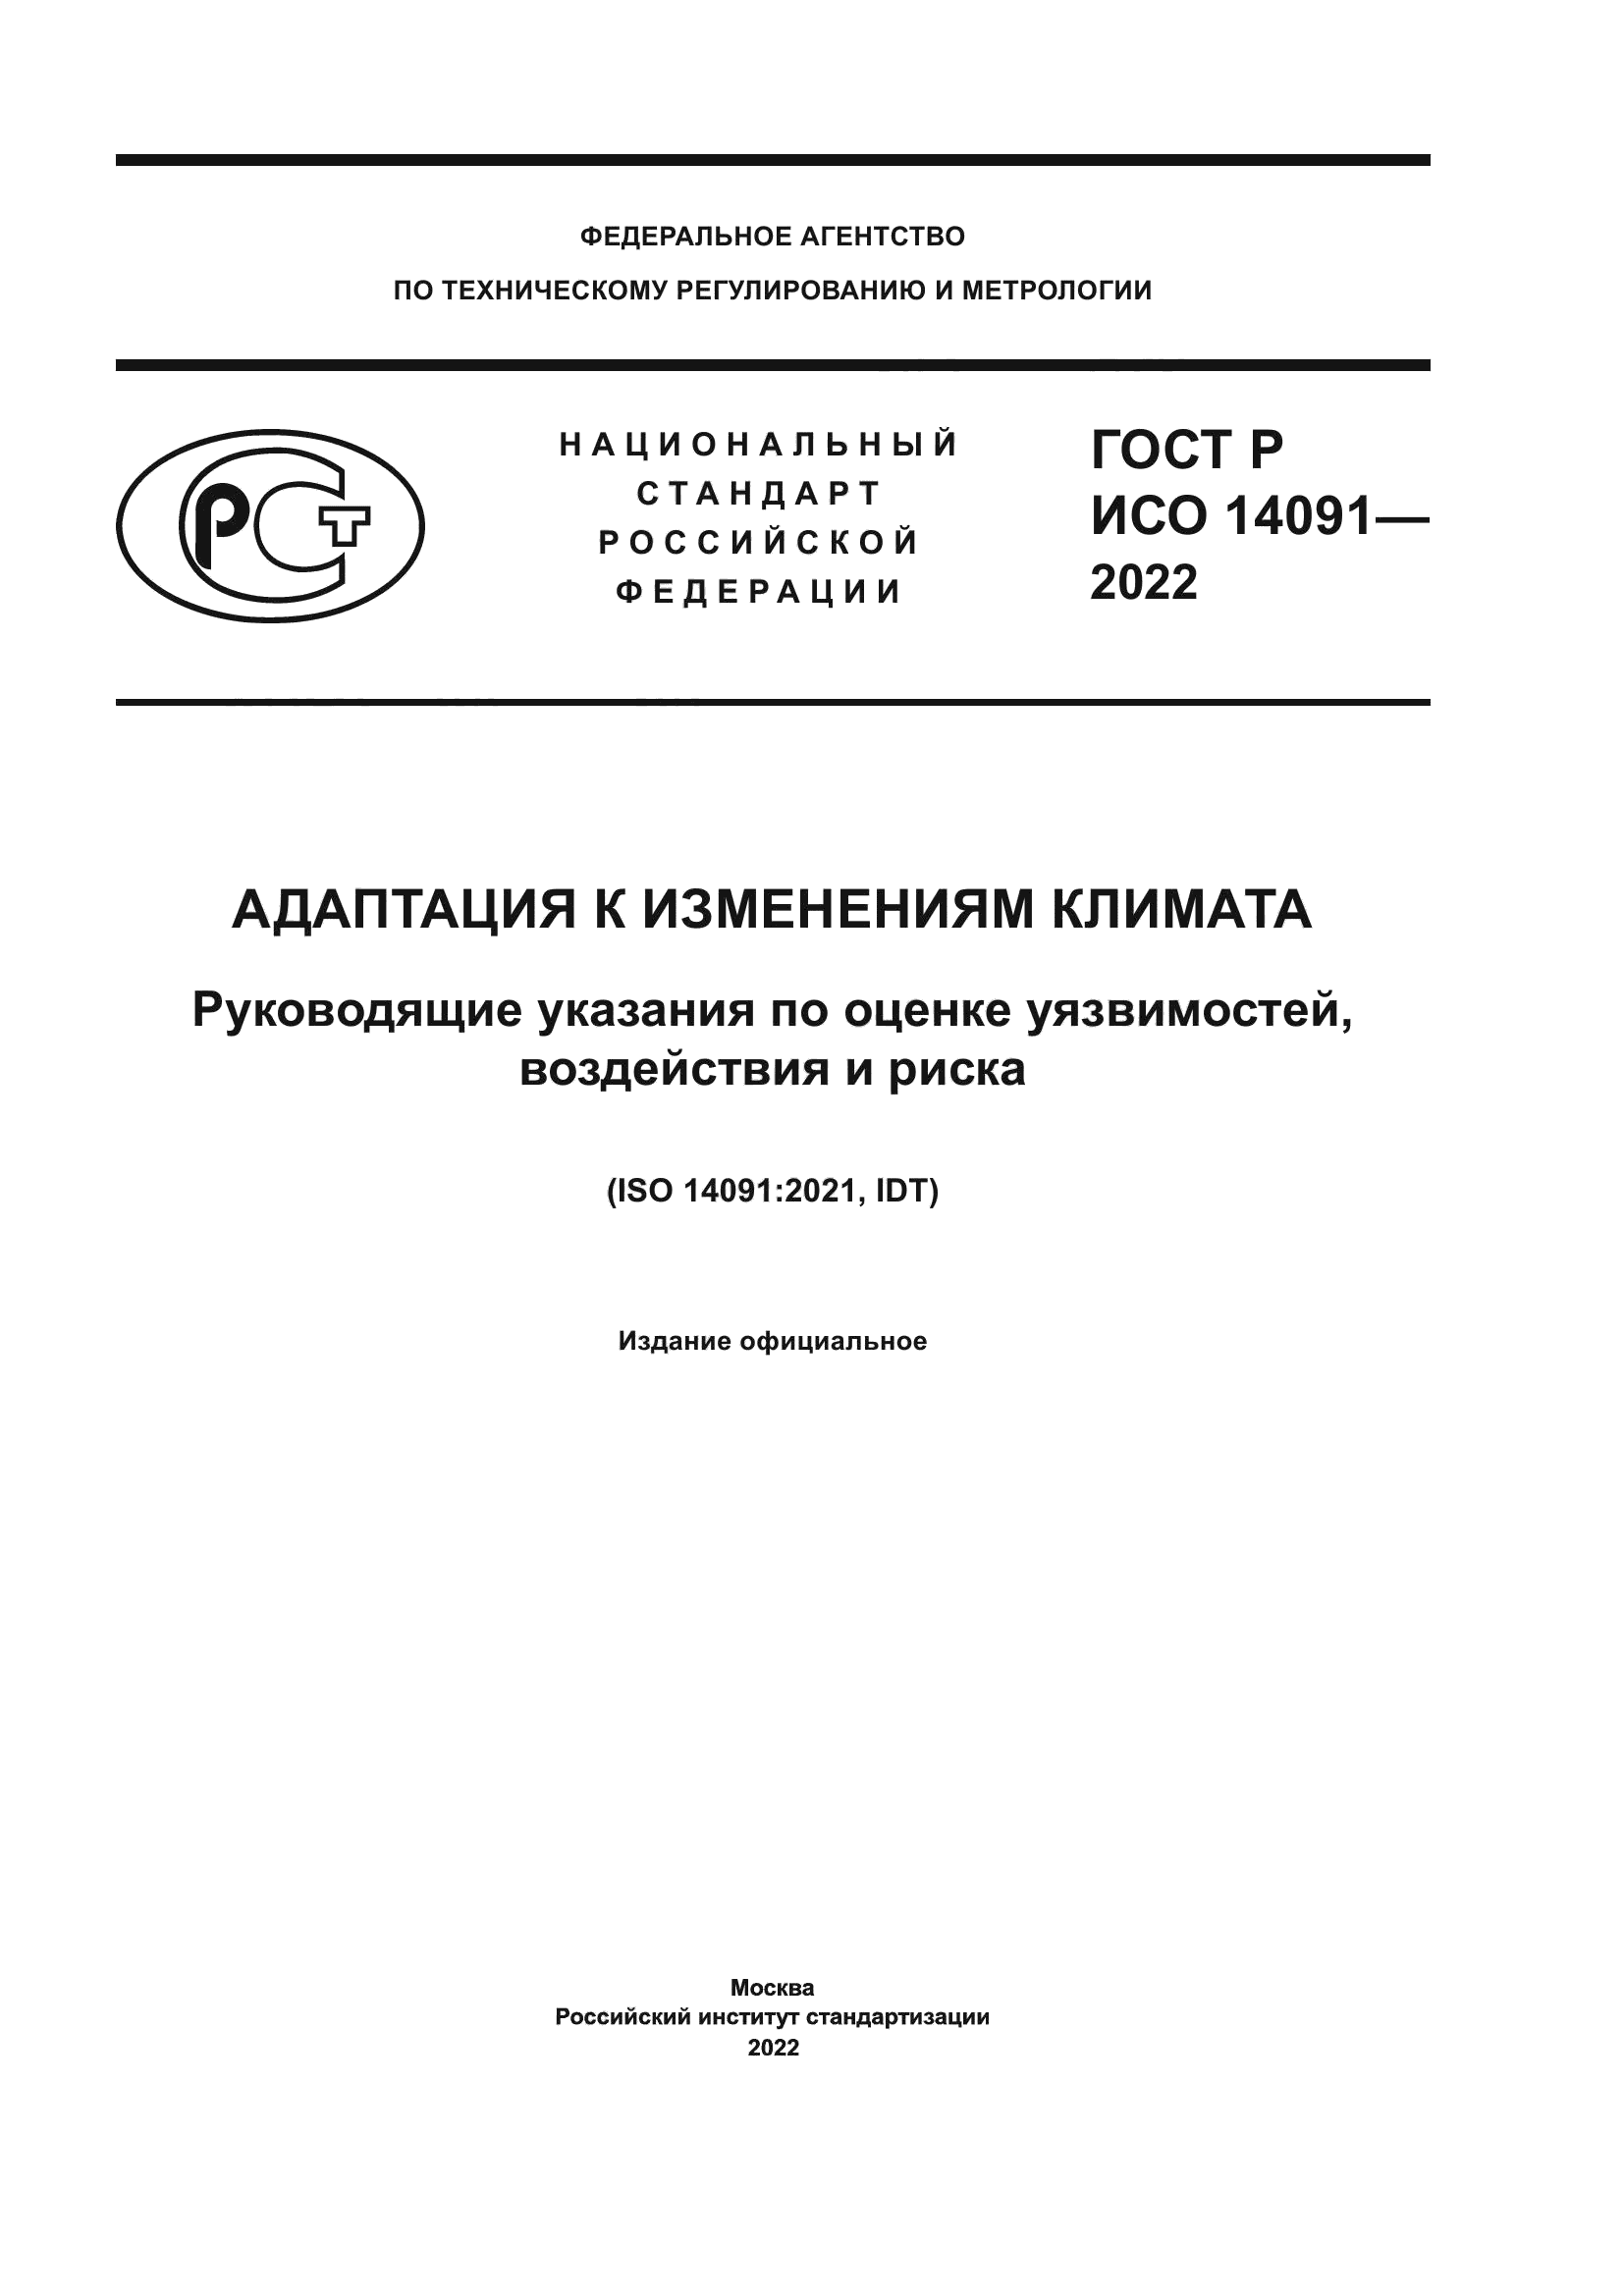 ГОСТ Р ИСО 14091-2022